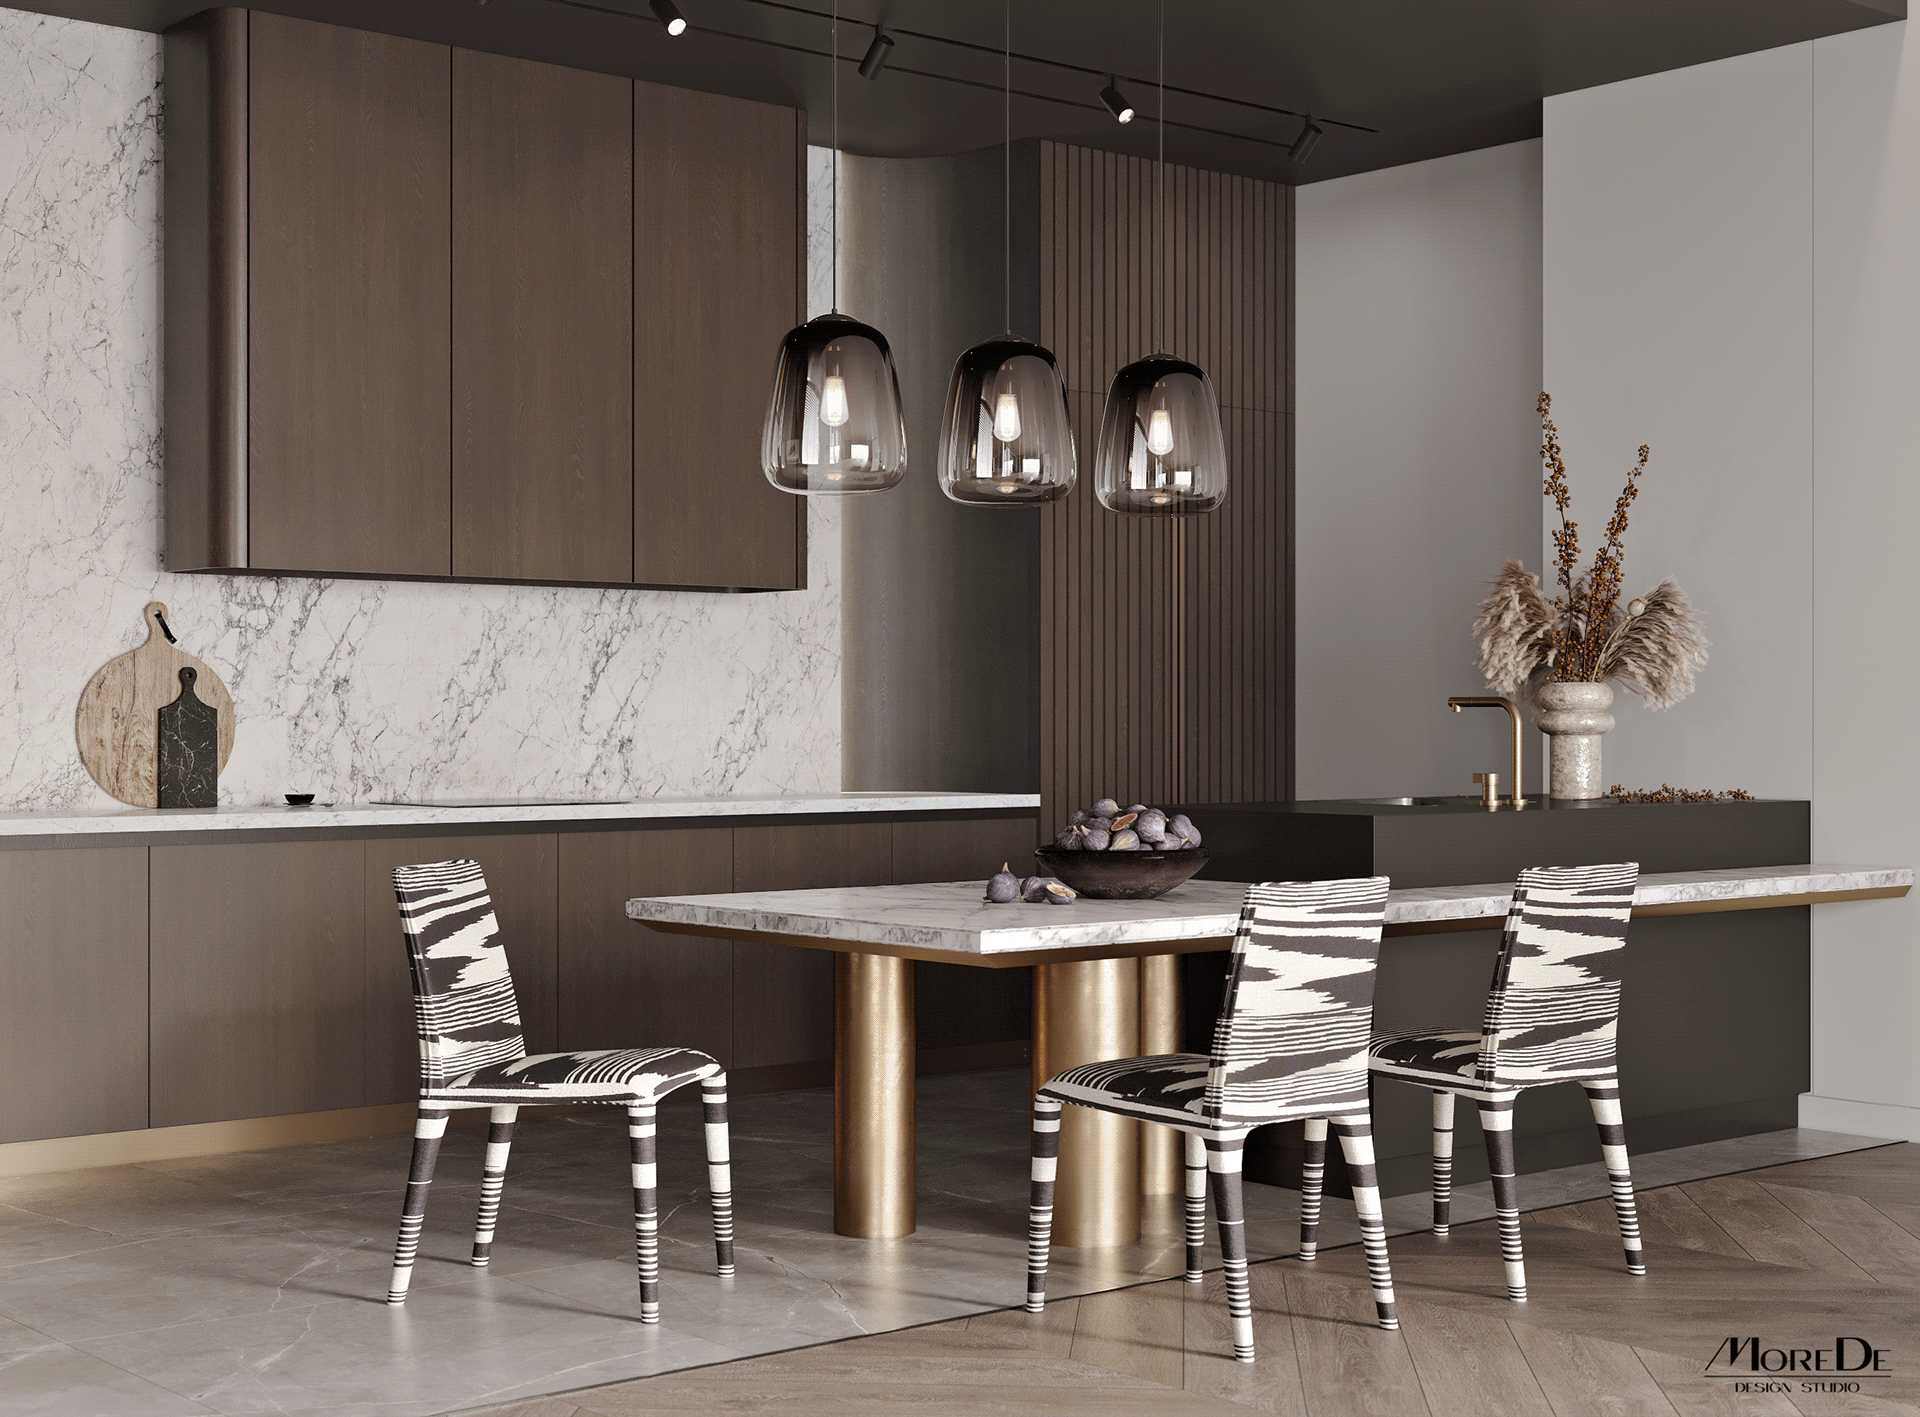 Thiết kế phòng bếp chung cư với bàn ăn nối dài từ đảo bếp